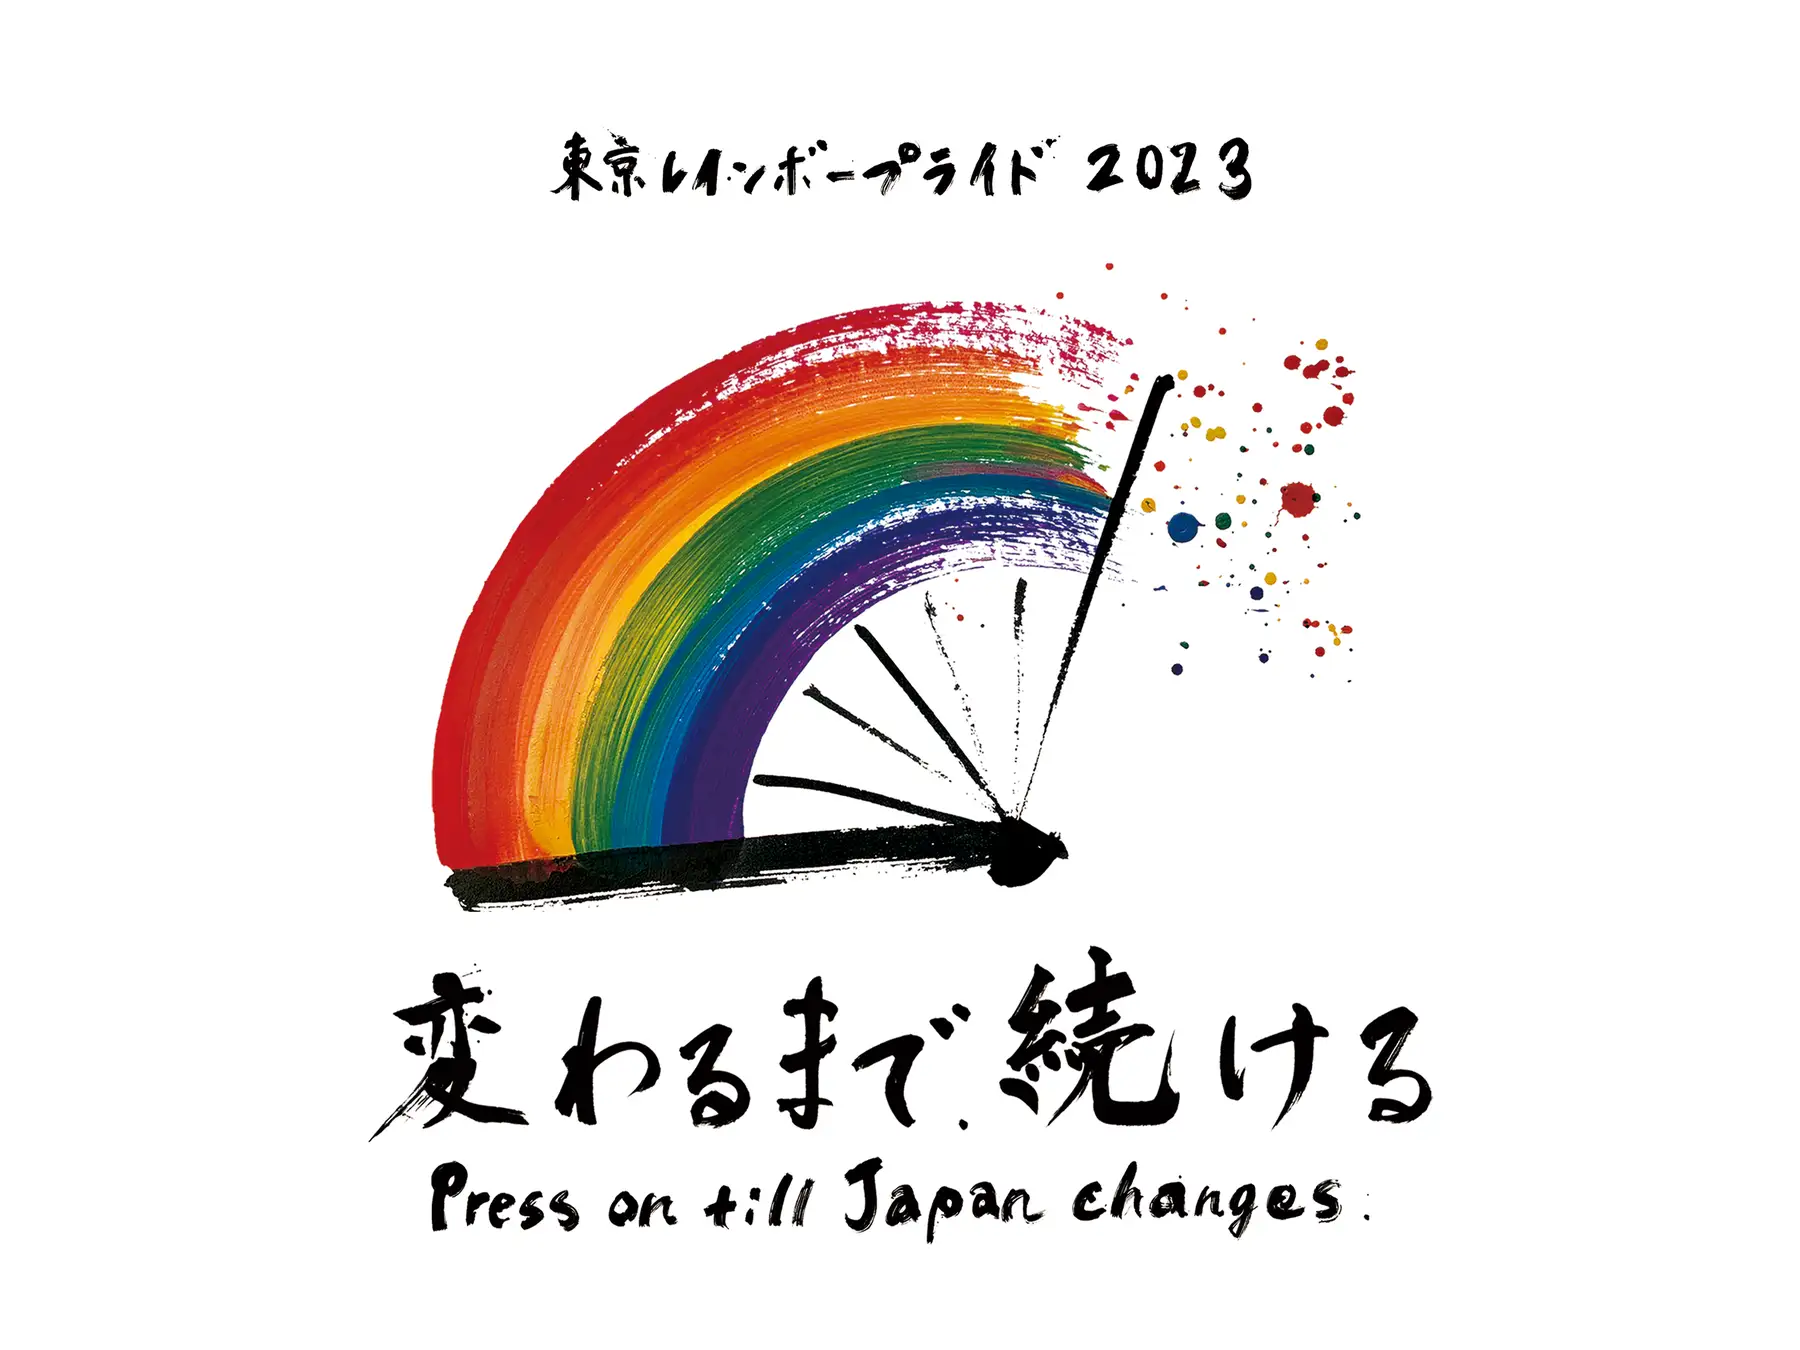 「変わるまで、続ける」をテーマに“多様な社会の実現”へ。アジア最大級の「“性”と“生”の多様性」を祝福する祭典「東京レインボープライド2023」開催